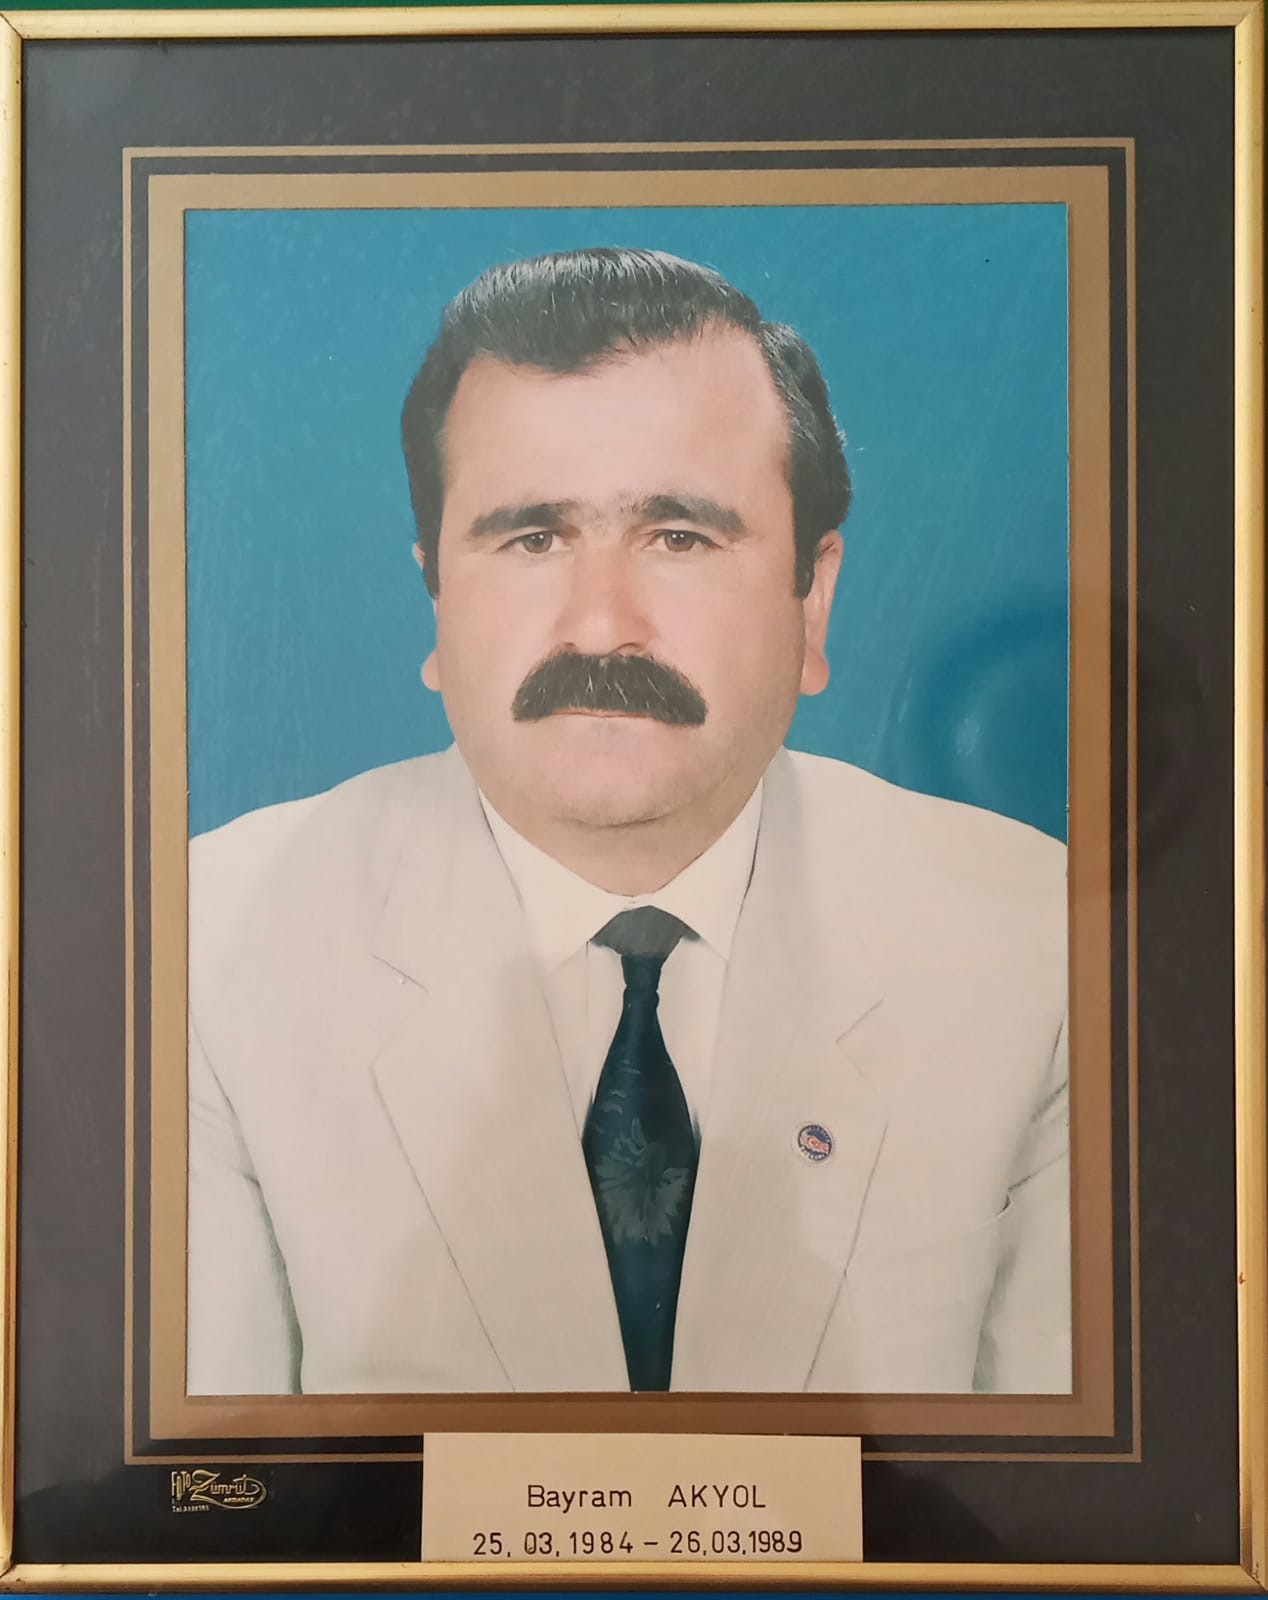 Bayram AKYOL (25.03.1984 — 26.03.1989) 